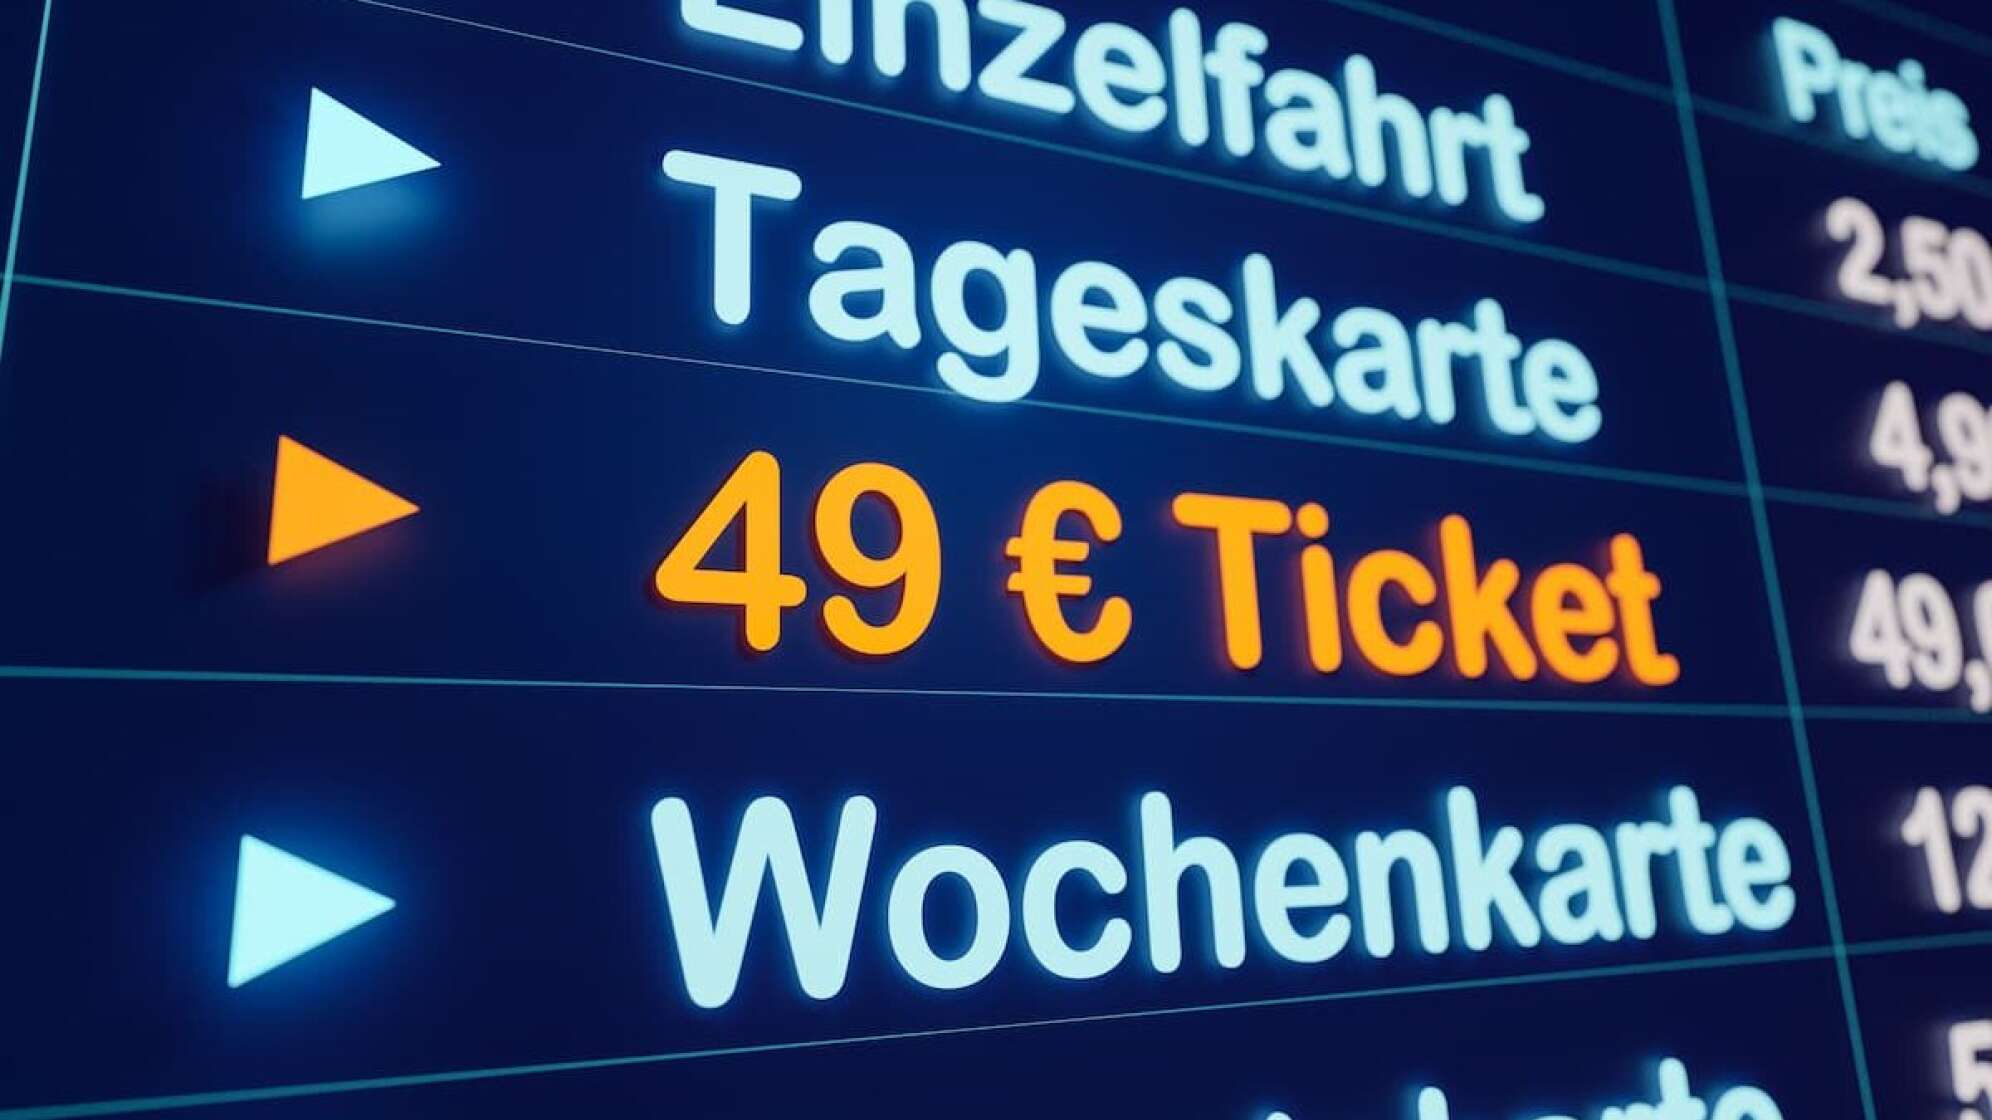 Fahrkartenoptionen: 49 Euro Ticket